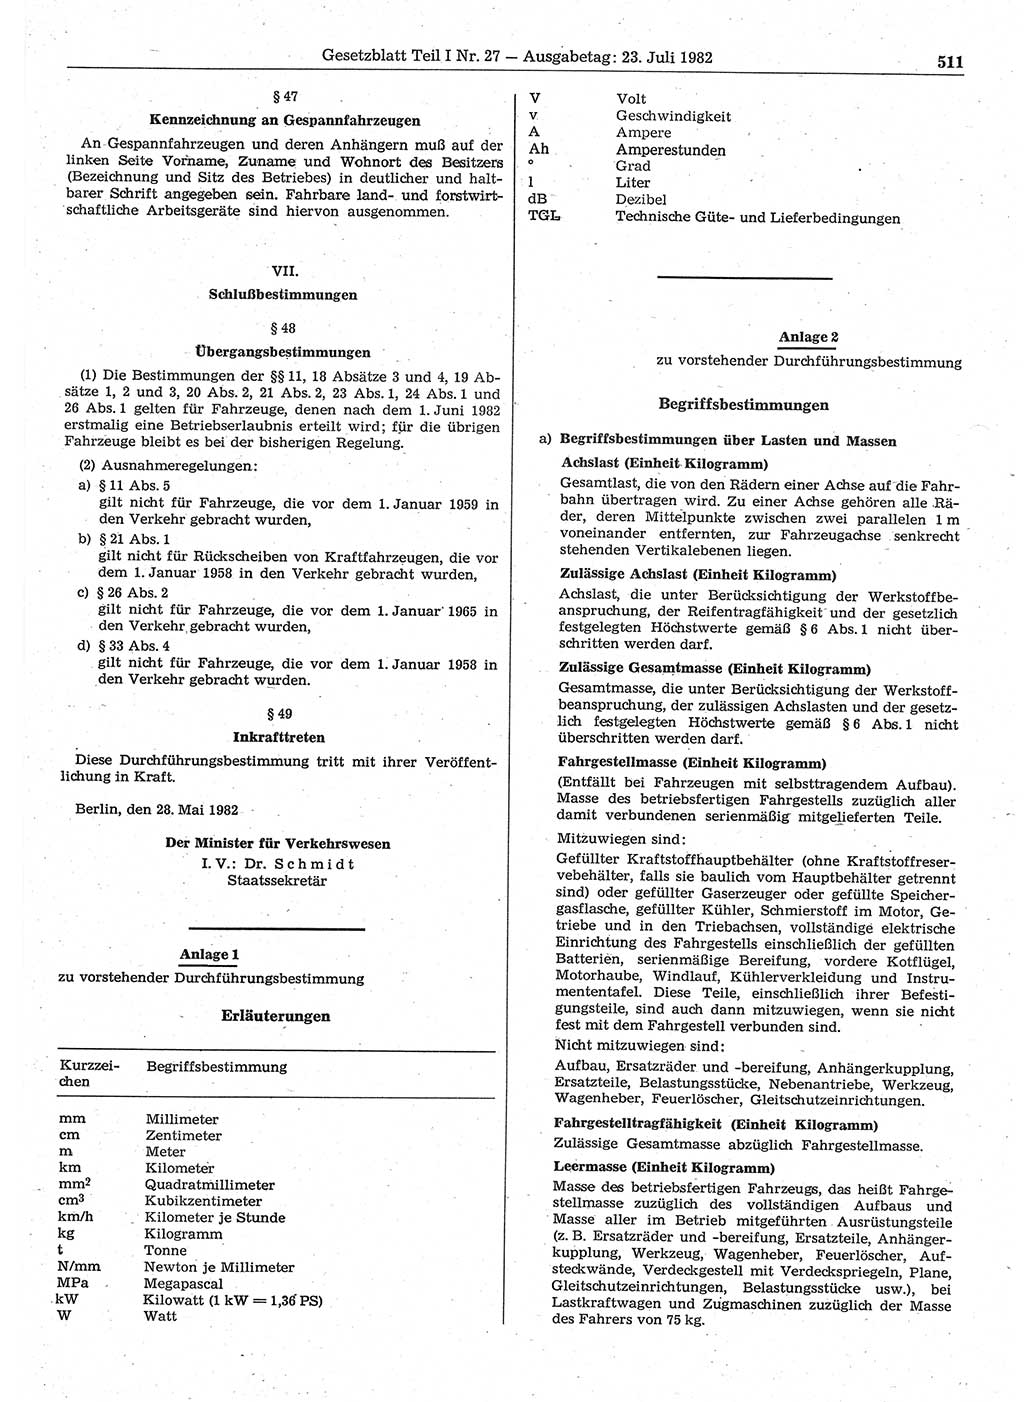 Gesetzblatt (GBl.) der Deutschen Demokratischen Republik (DDR) Teil Ⅰ 1982, Seite 511 (GBl. DDR Ⅰ 1982, S. 511)